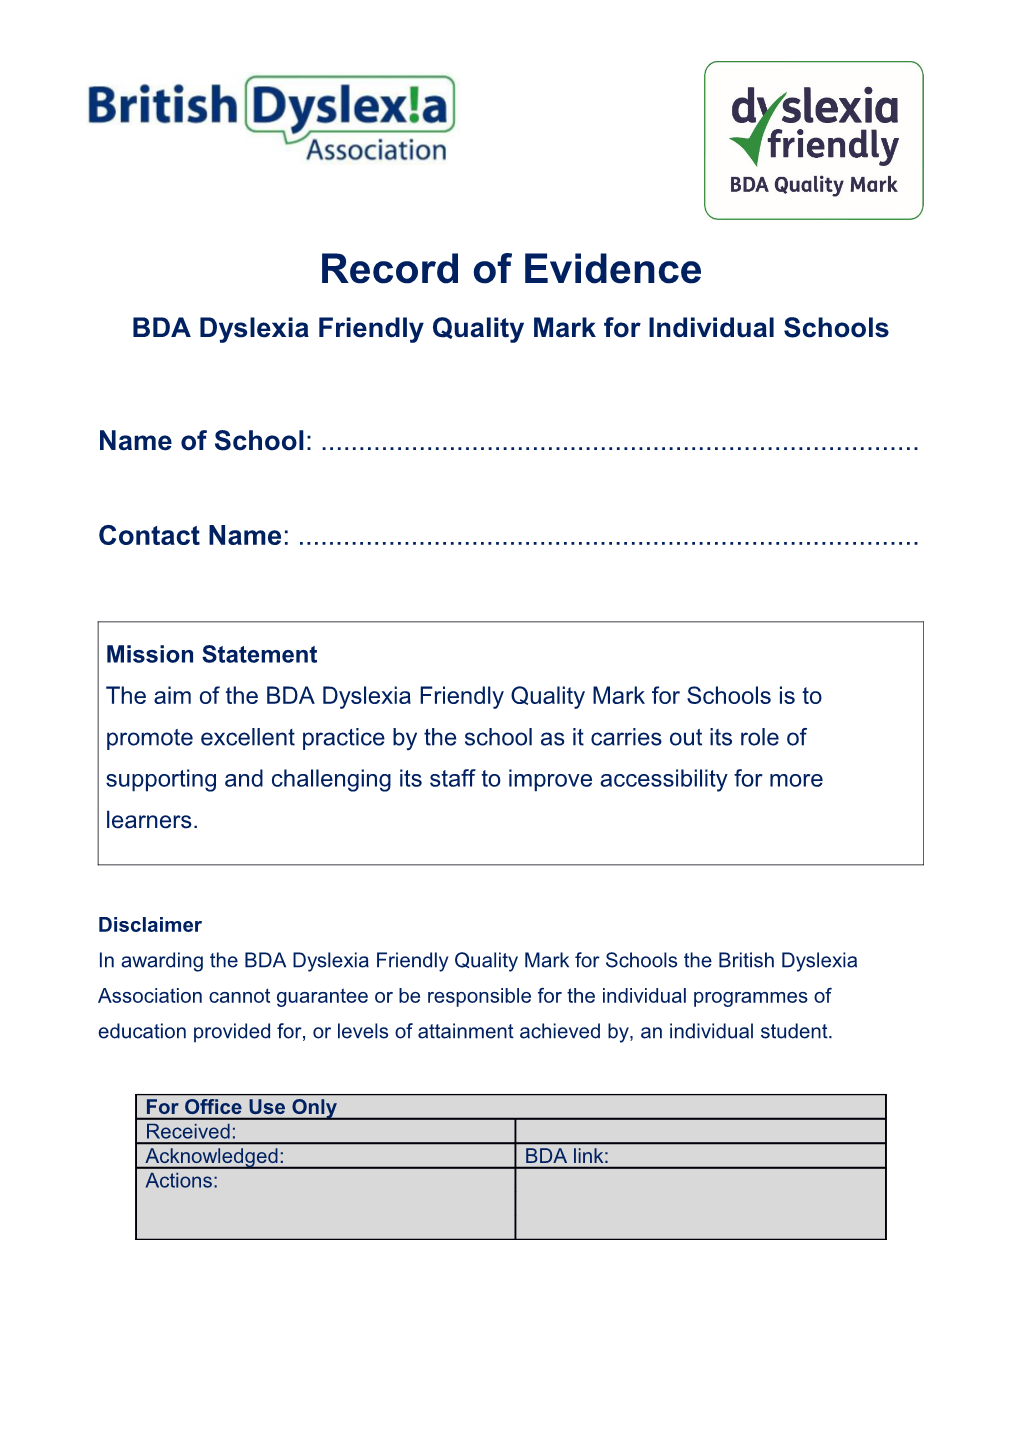 BDA Dyslexia Friendly Quality Mark for Individual Schools